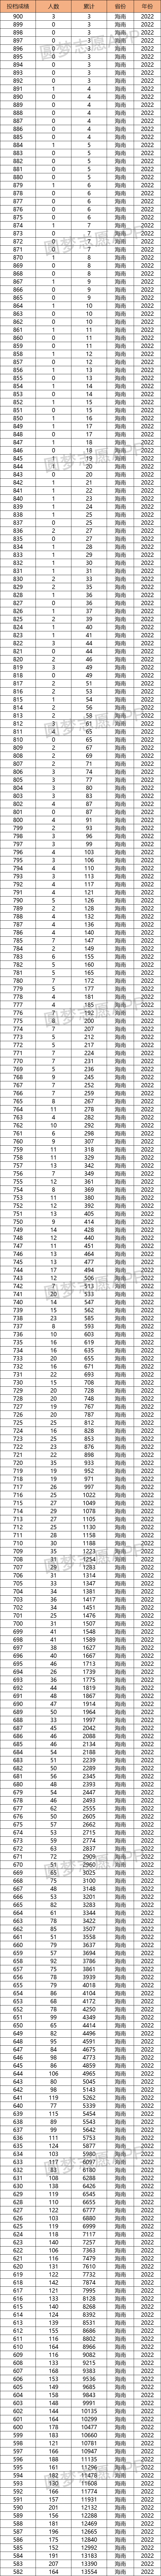 2022海南高考一分一段排名表-海南高考位次表2022